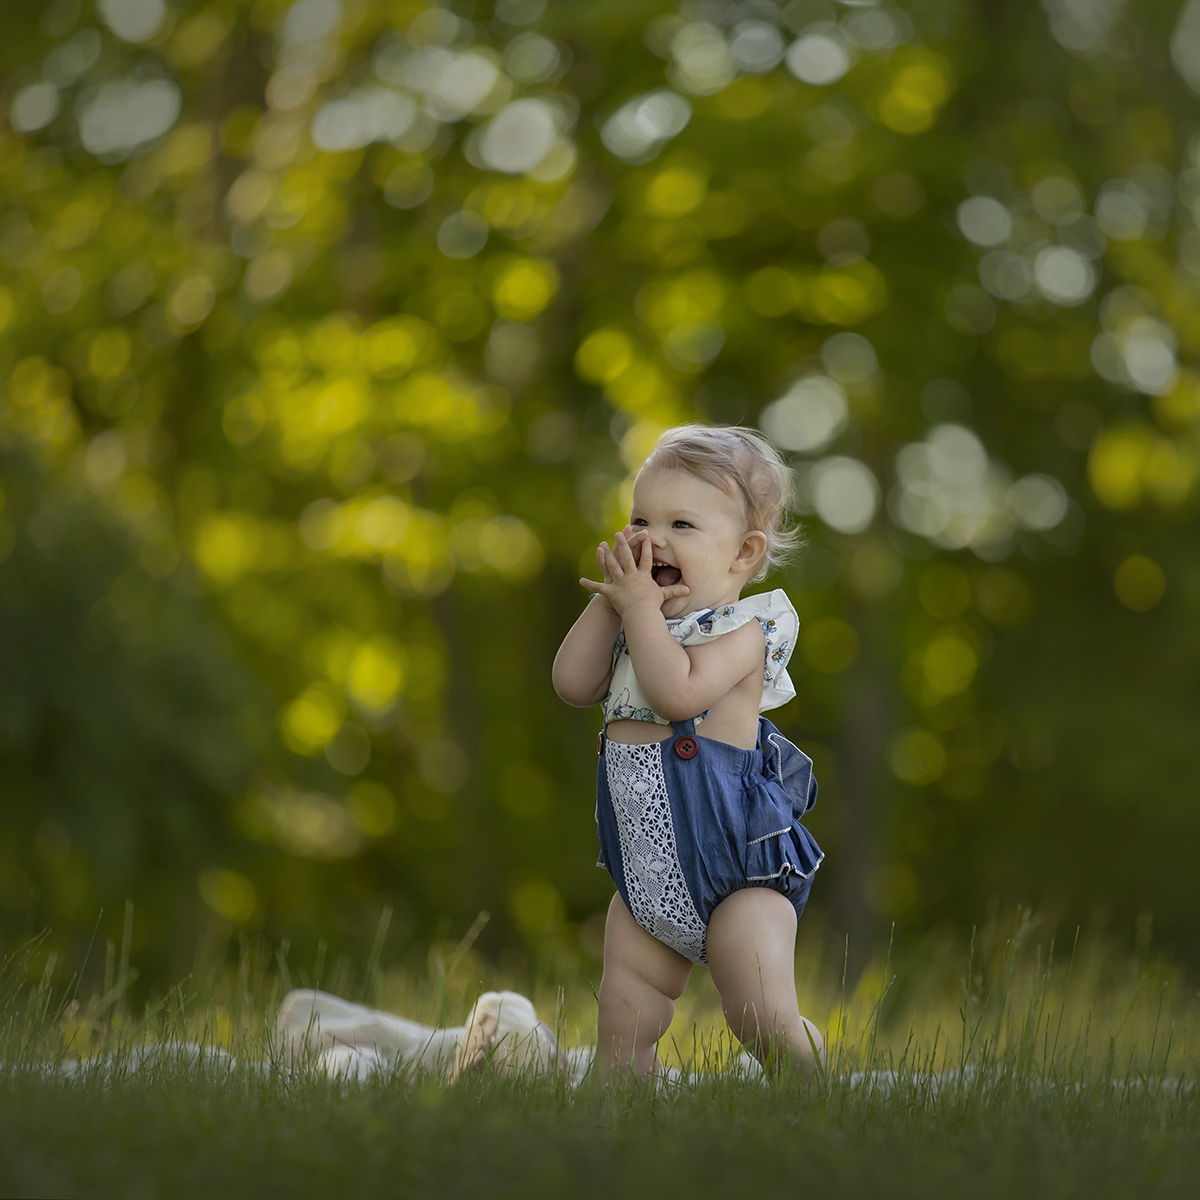 Toddler in blue romper in grassy field